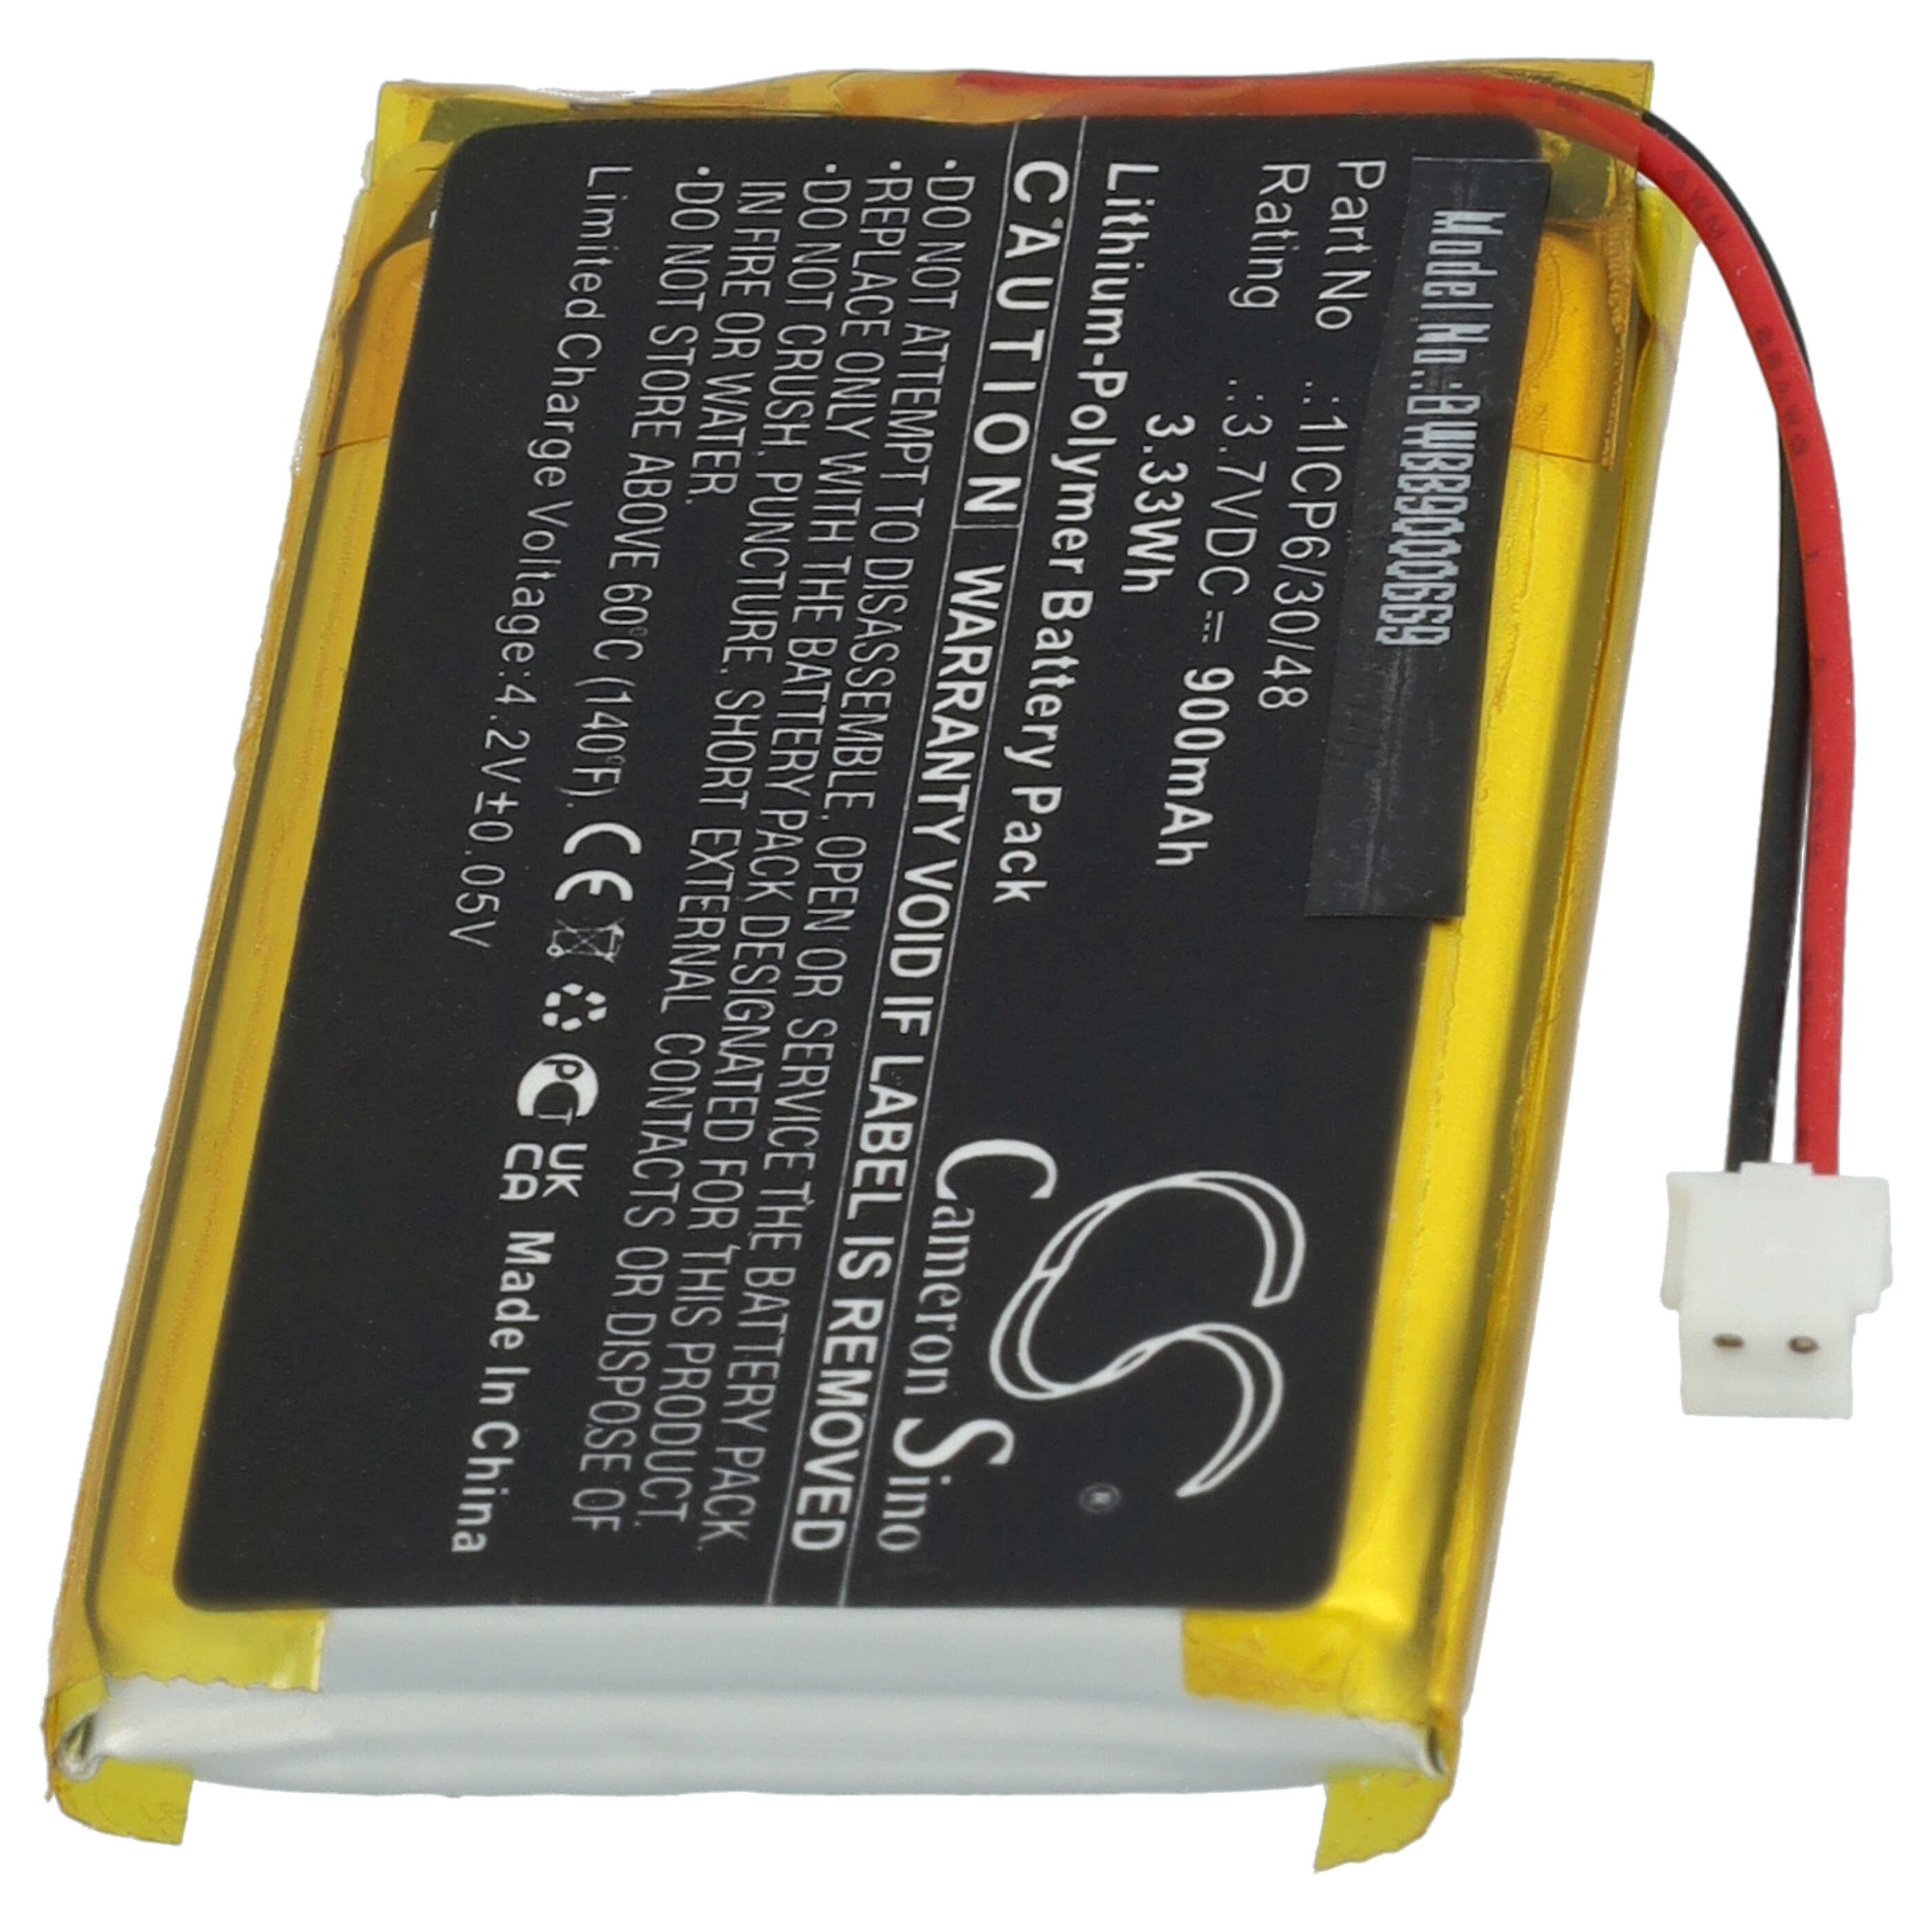 Batería reemplaza Babymoov 1ICP6/30/48 para vigilabebés Babymoov - 900 mAh 3,7 V Li-poli